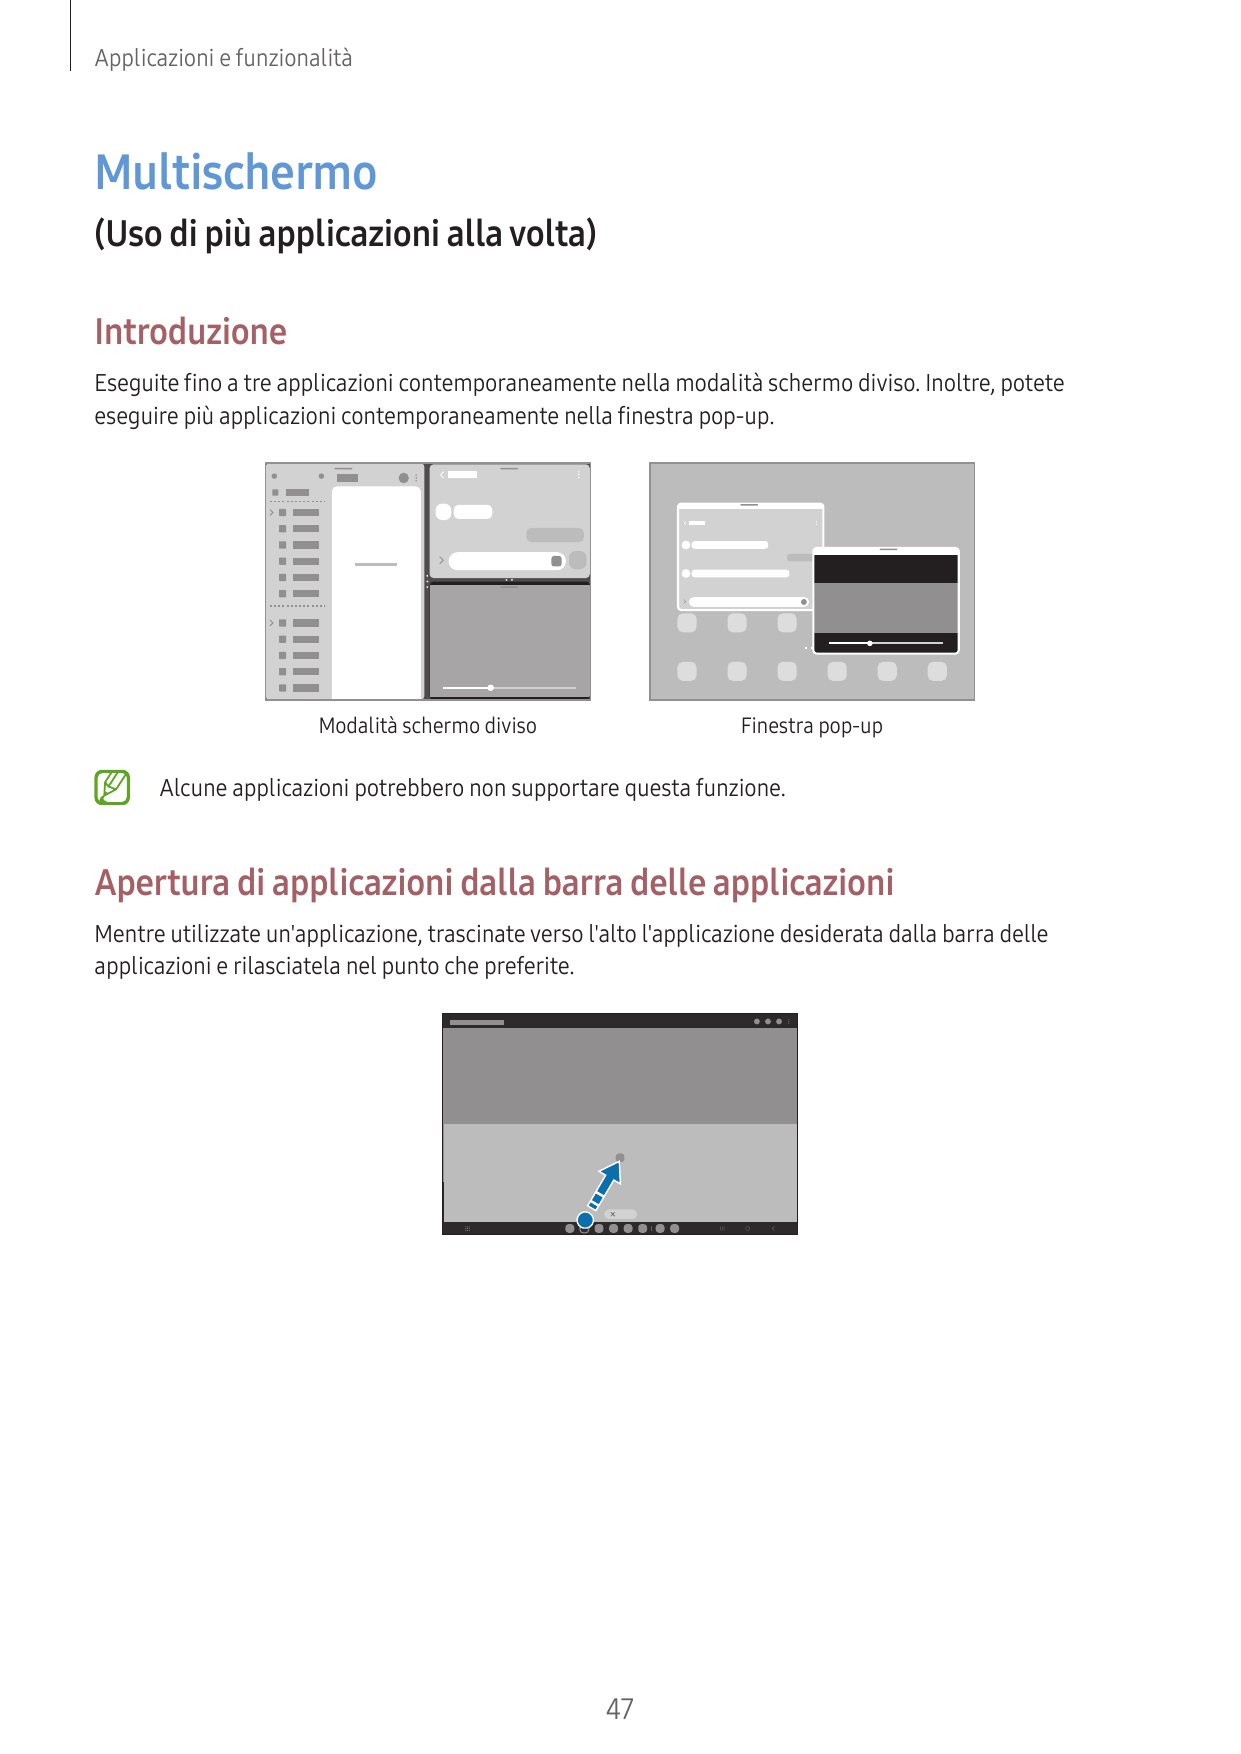 Applicazioni e funzionalitàMultischermo(Uso di più applicazioni alla volta)IntroduzioneEseguite fino a tre applicazioni contempo